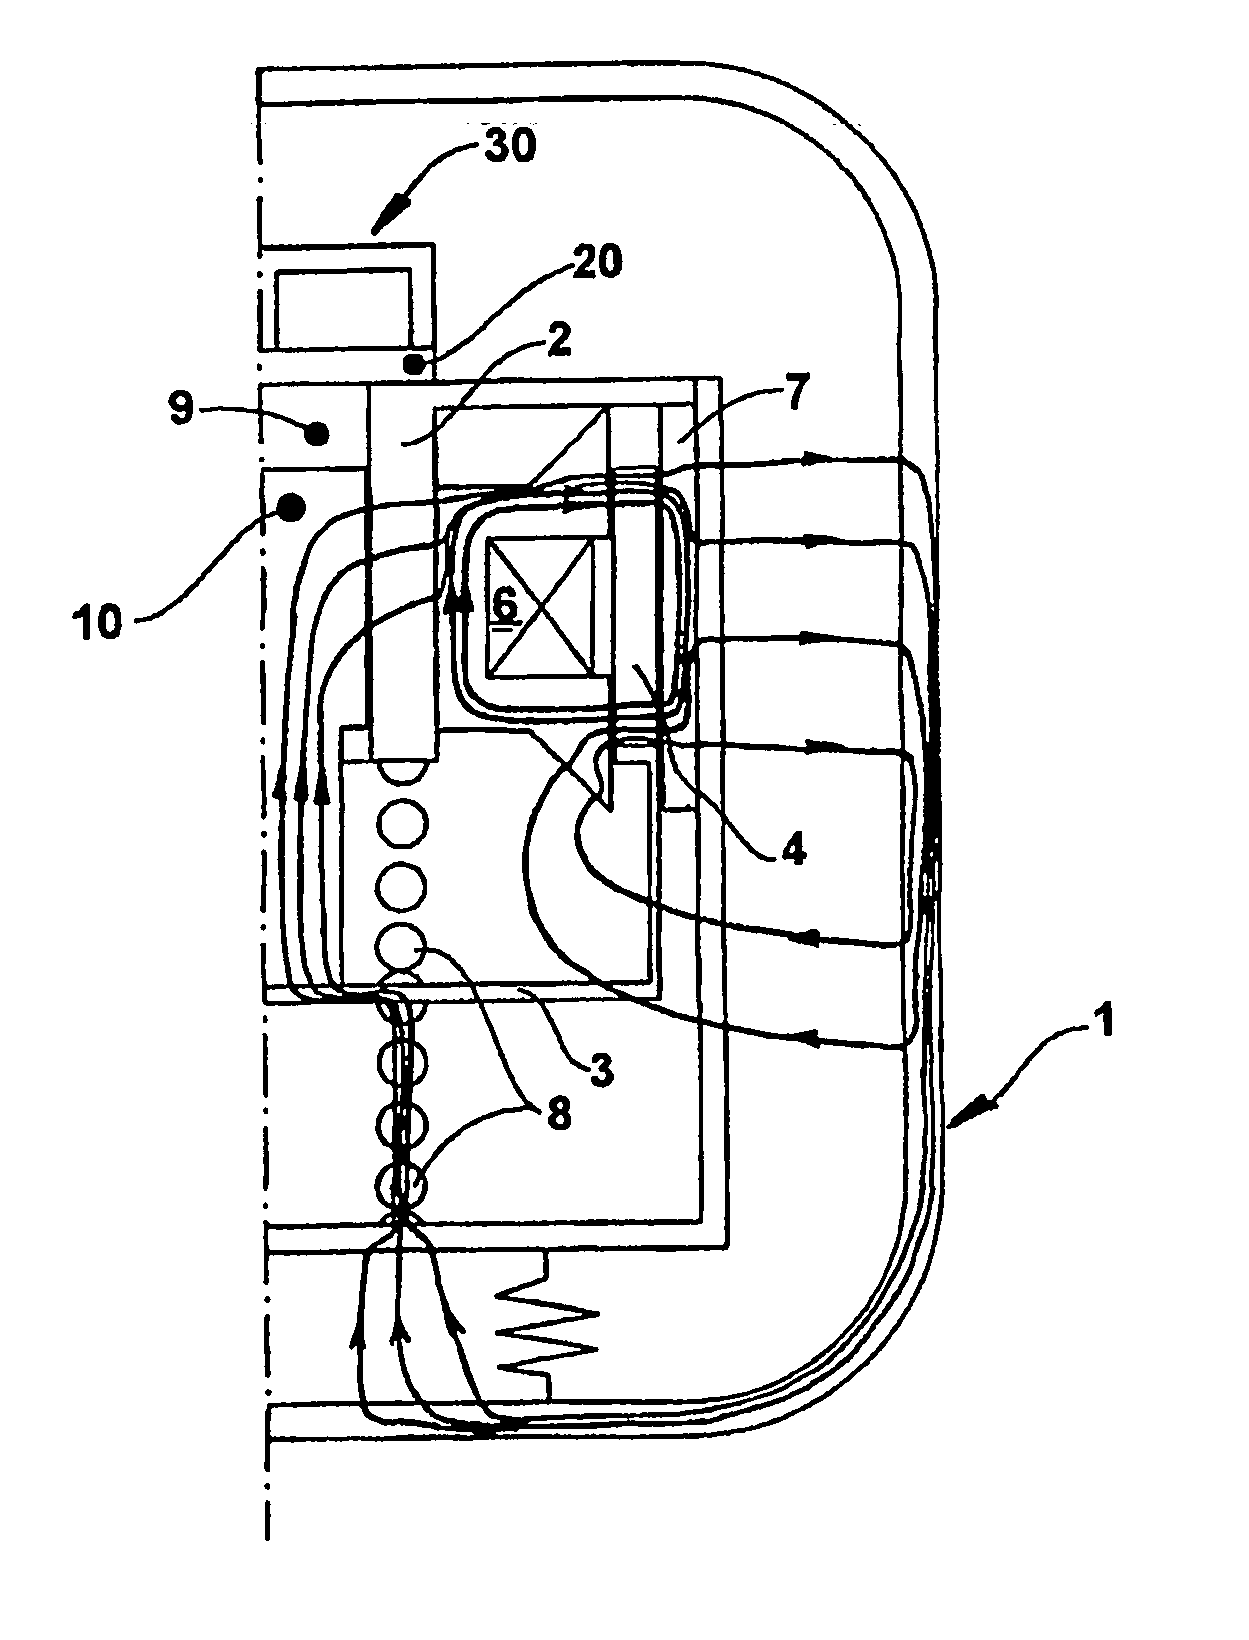 Constructive arrangement for a resonant compressor